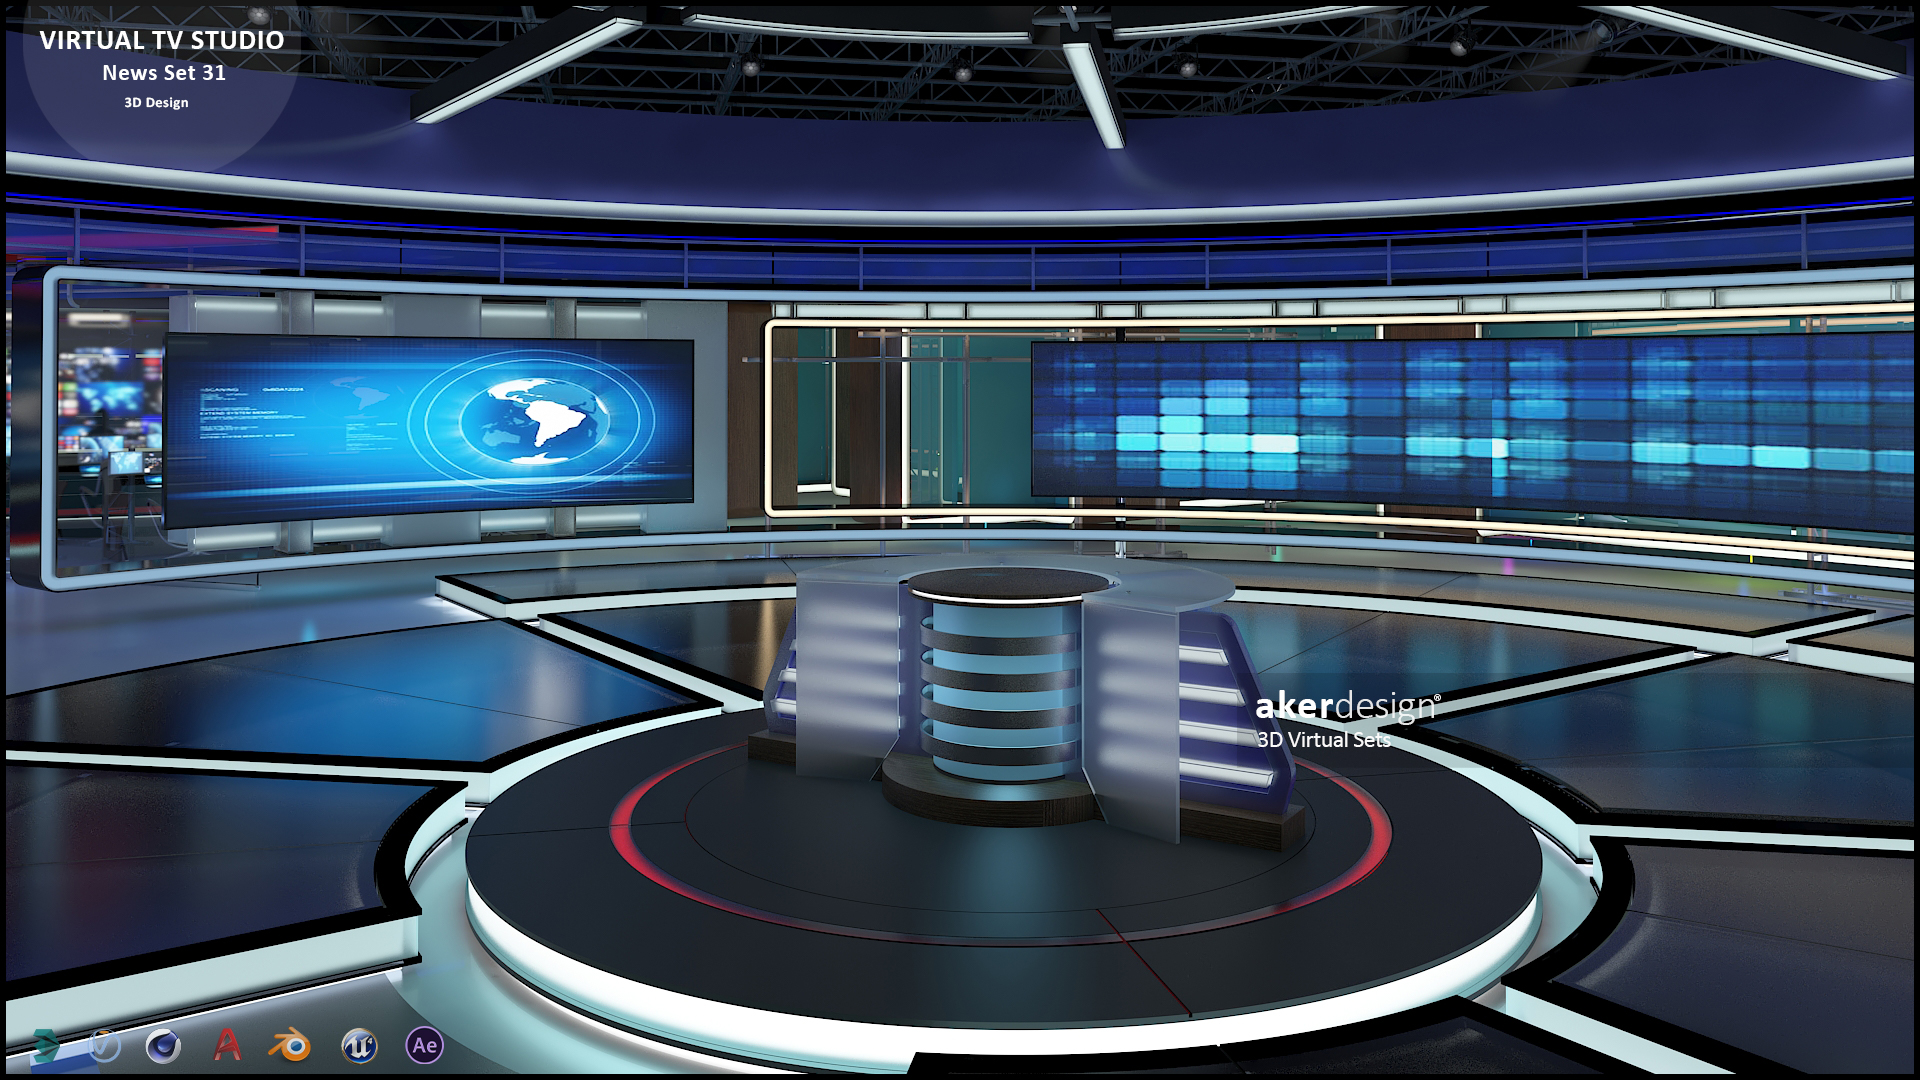 Virtual TV Studio Sets - 3D Model Designs